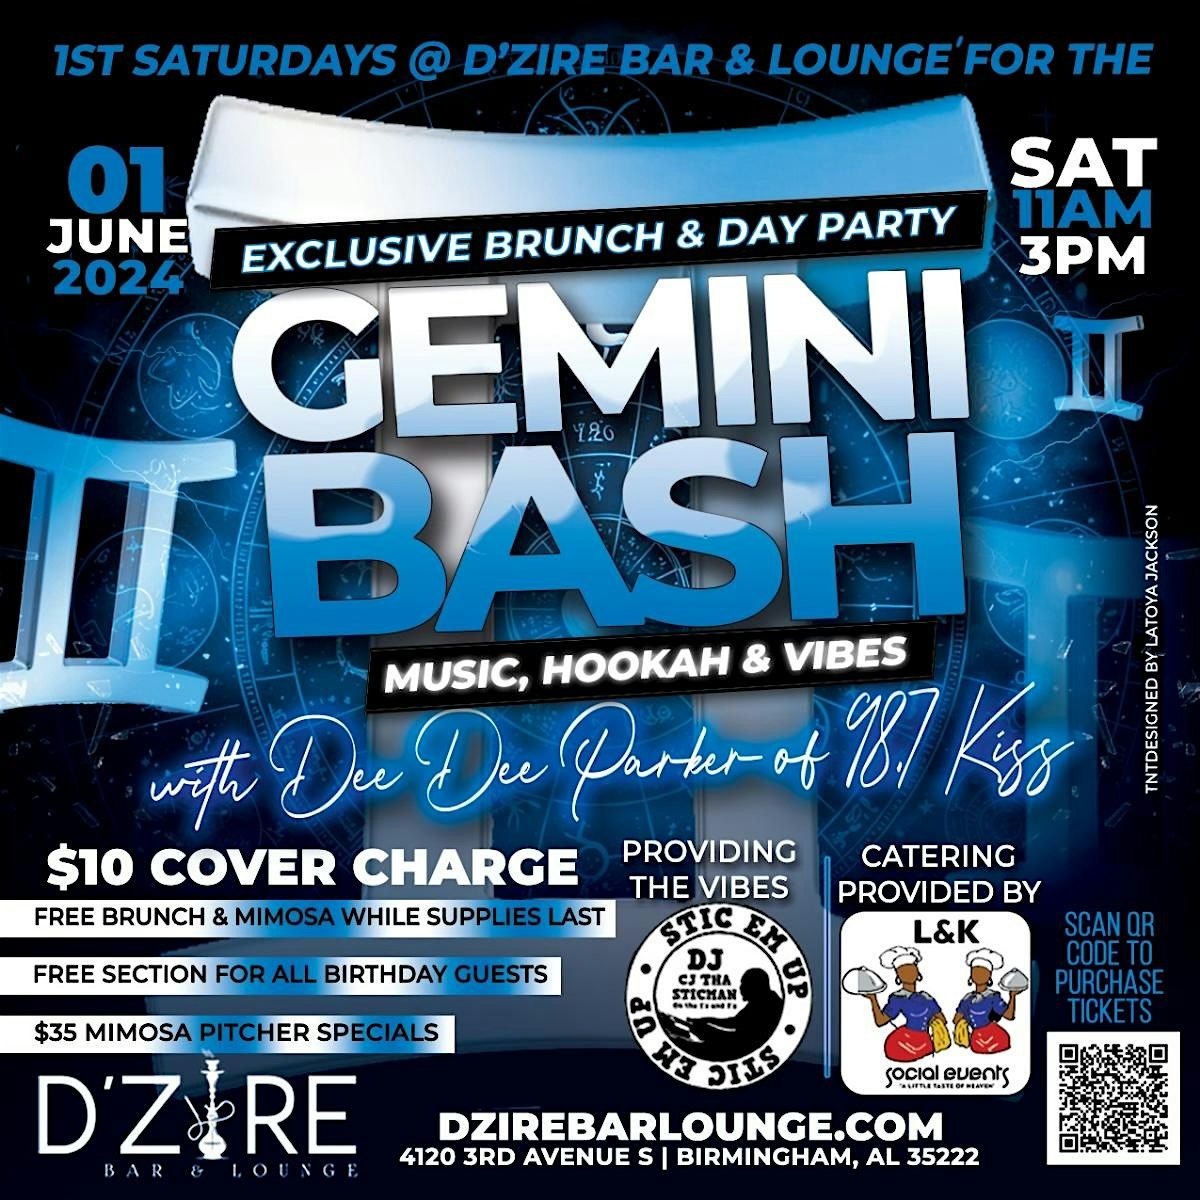 1st Saturdays Gemini Bash at Dzire Bar & Lounge